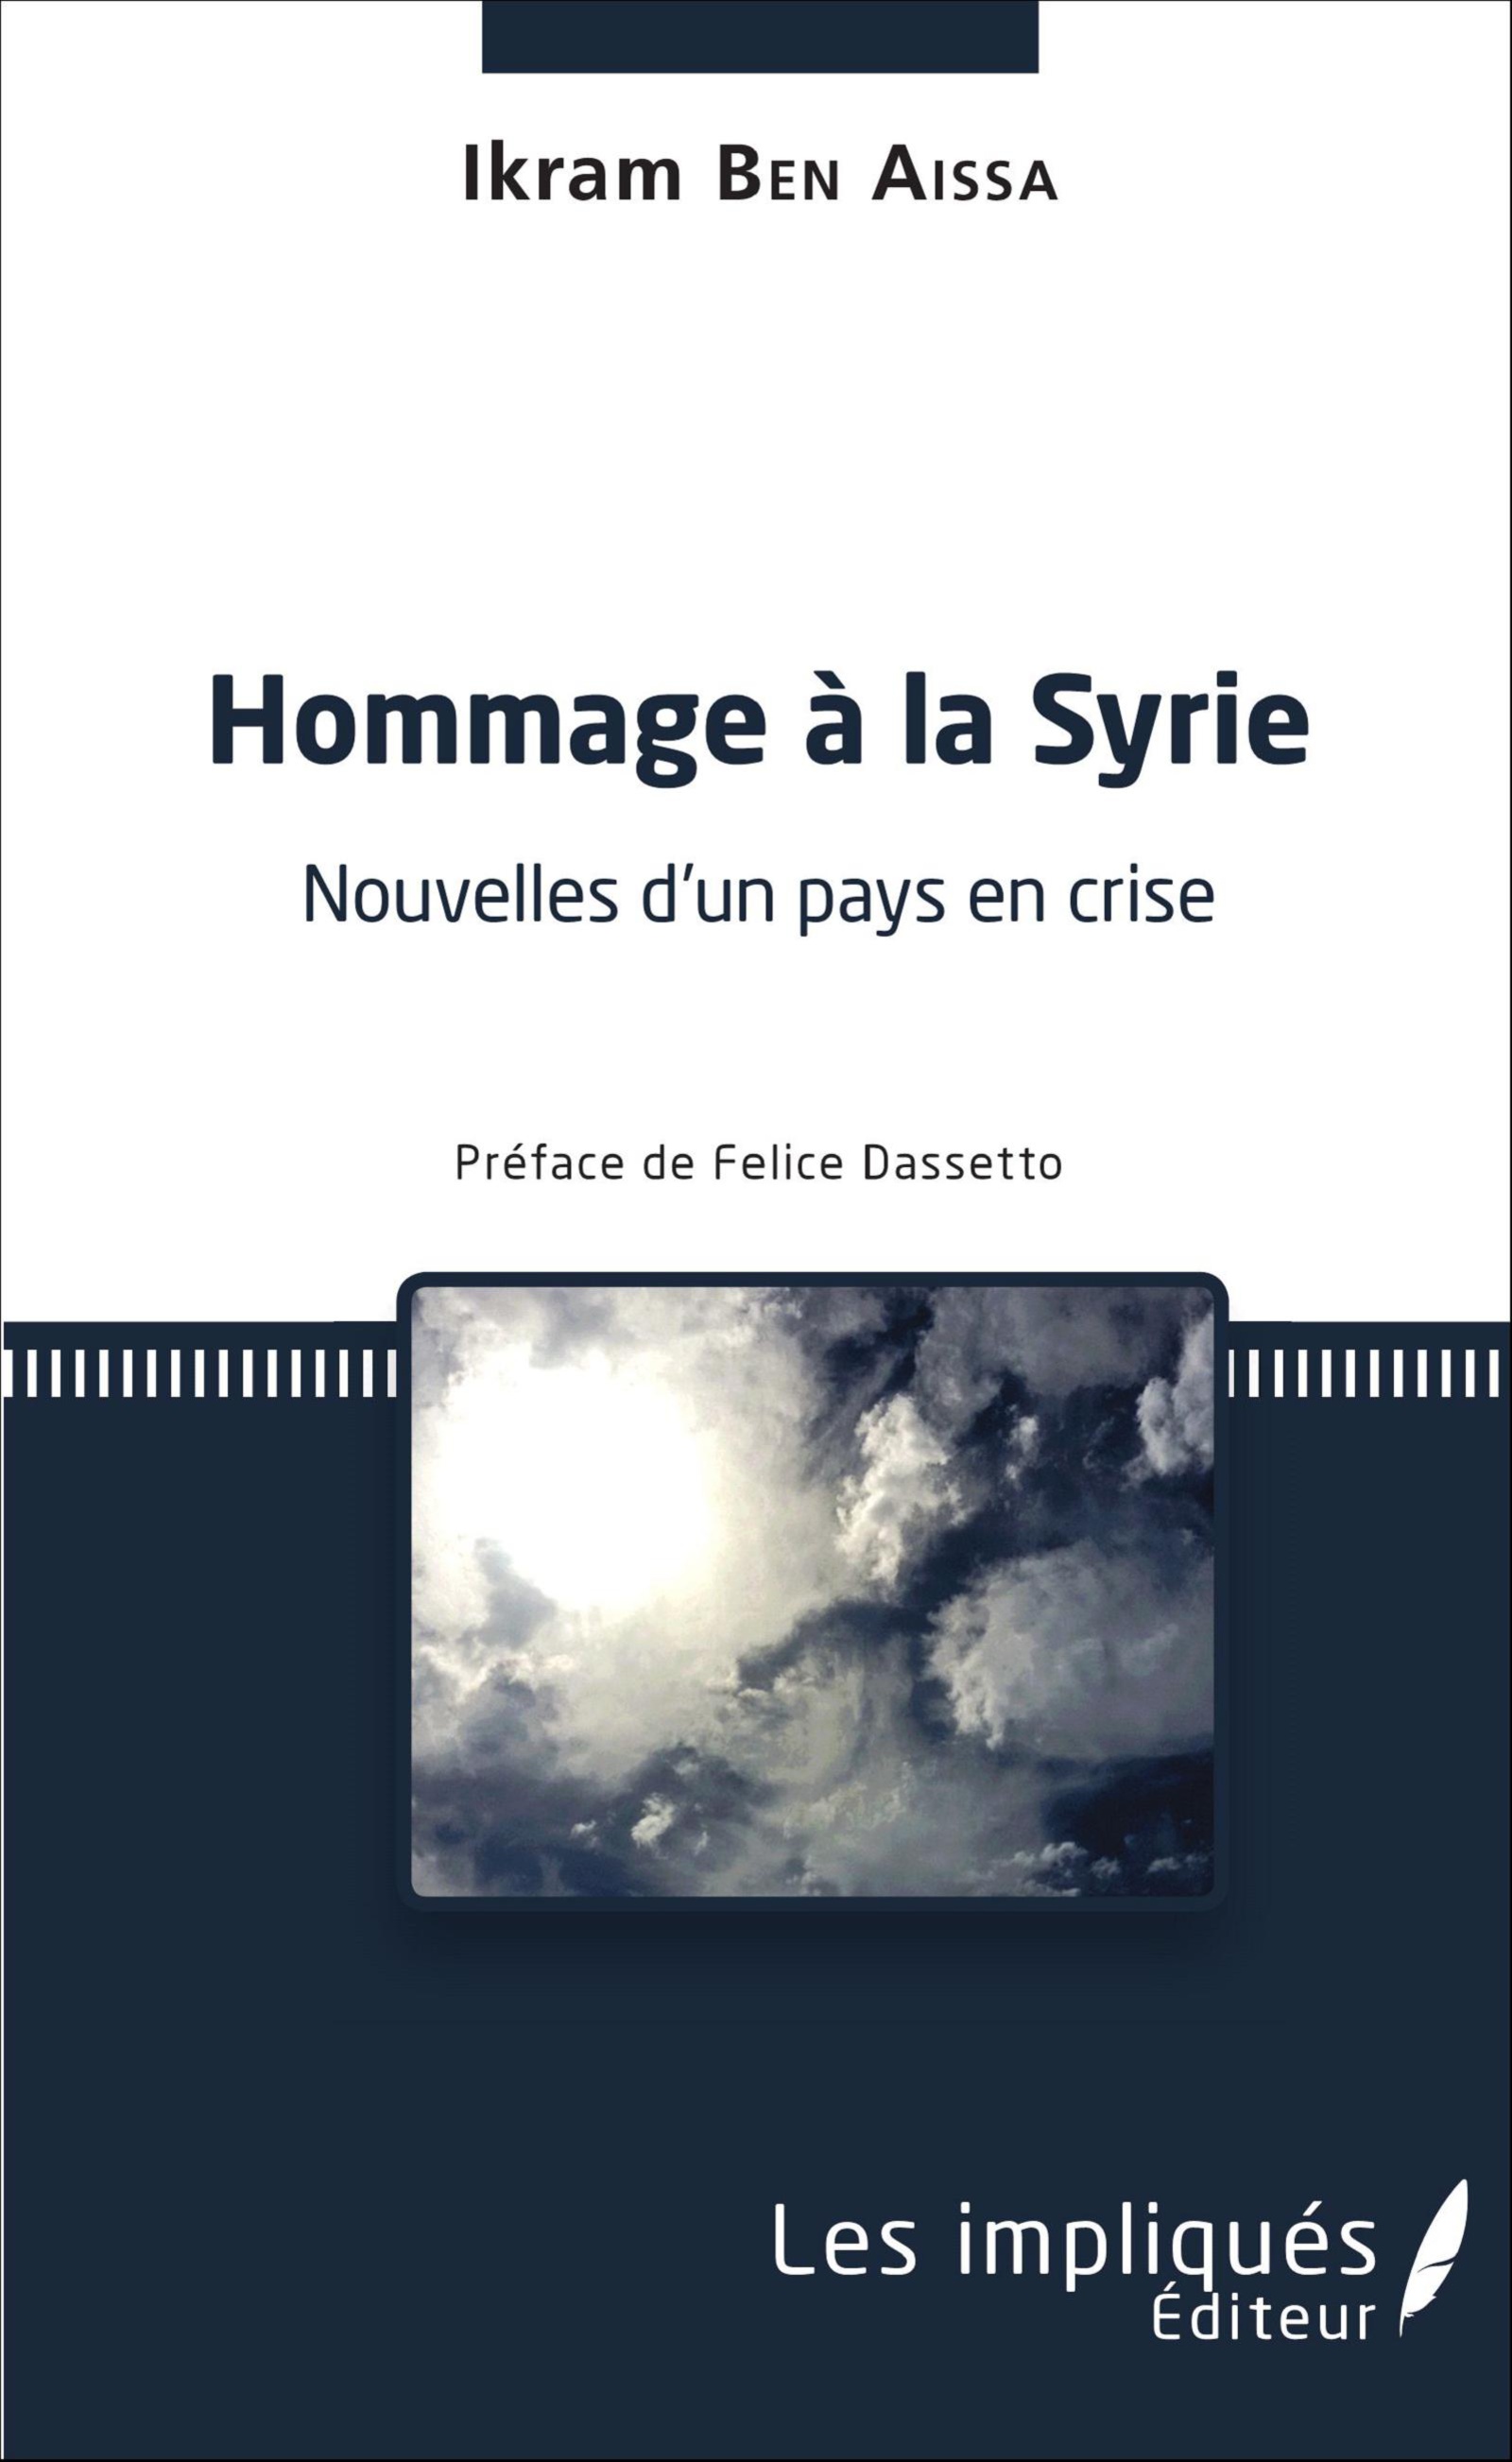 Hommage à la Syrie [59189]